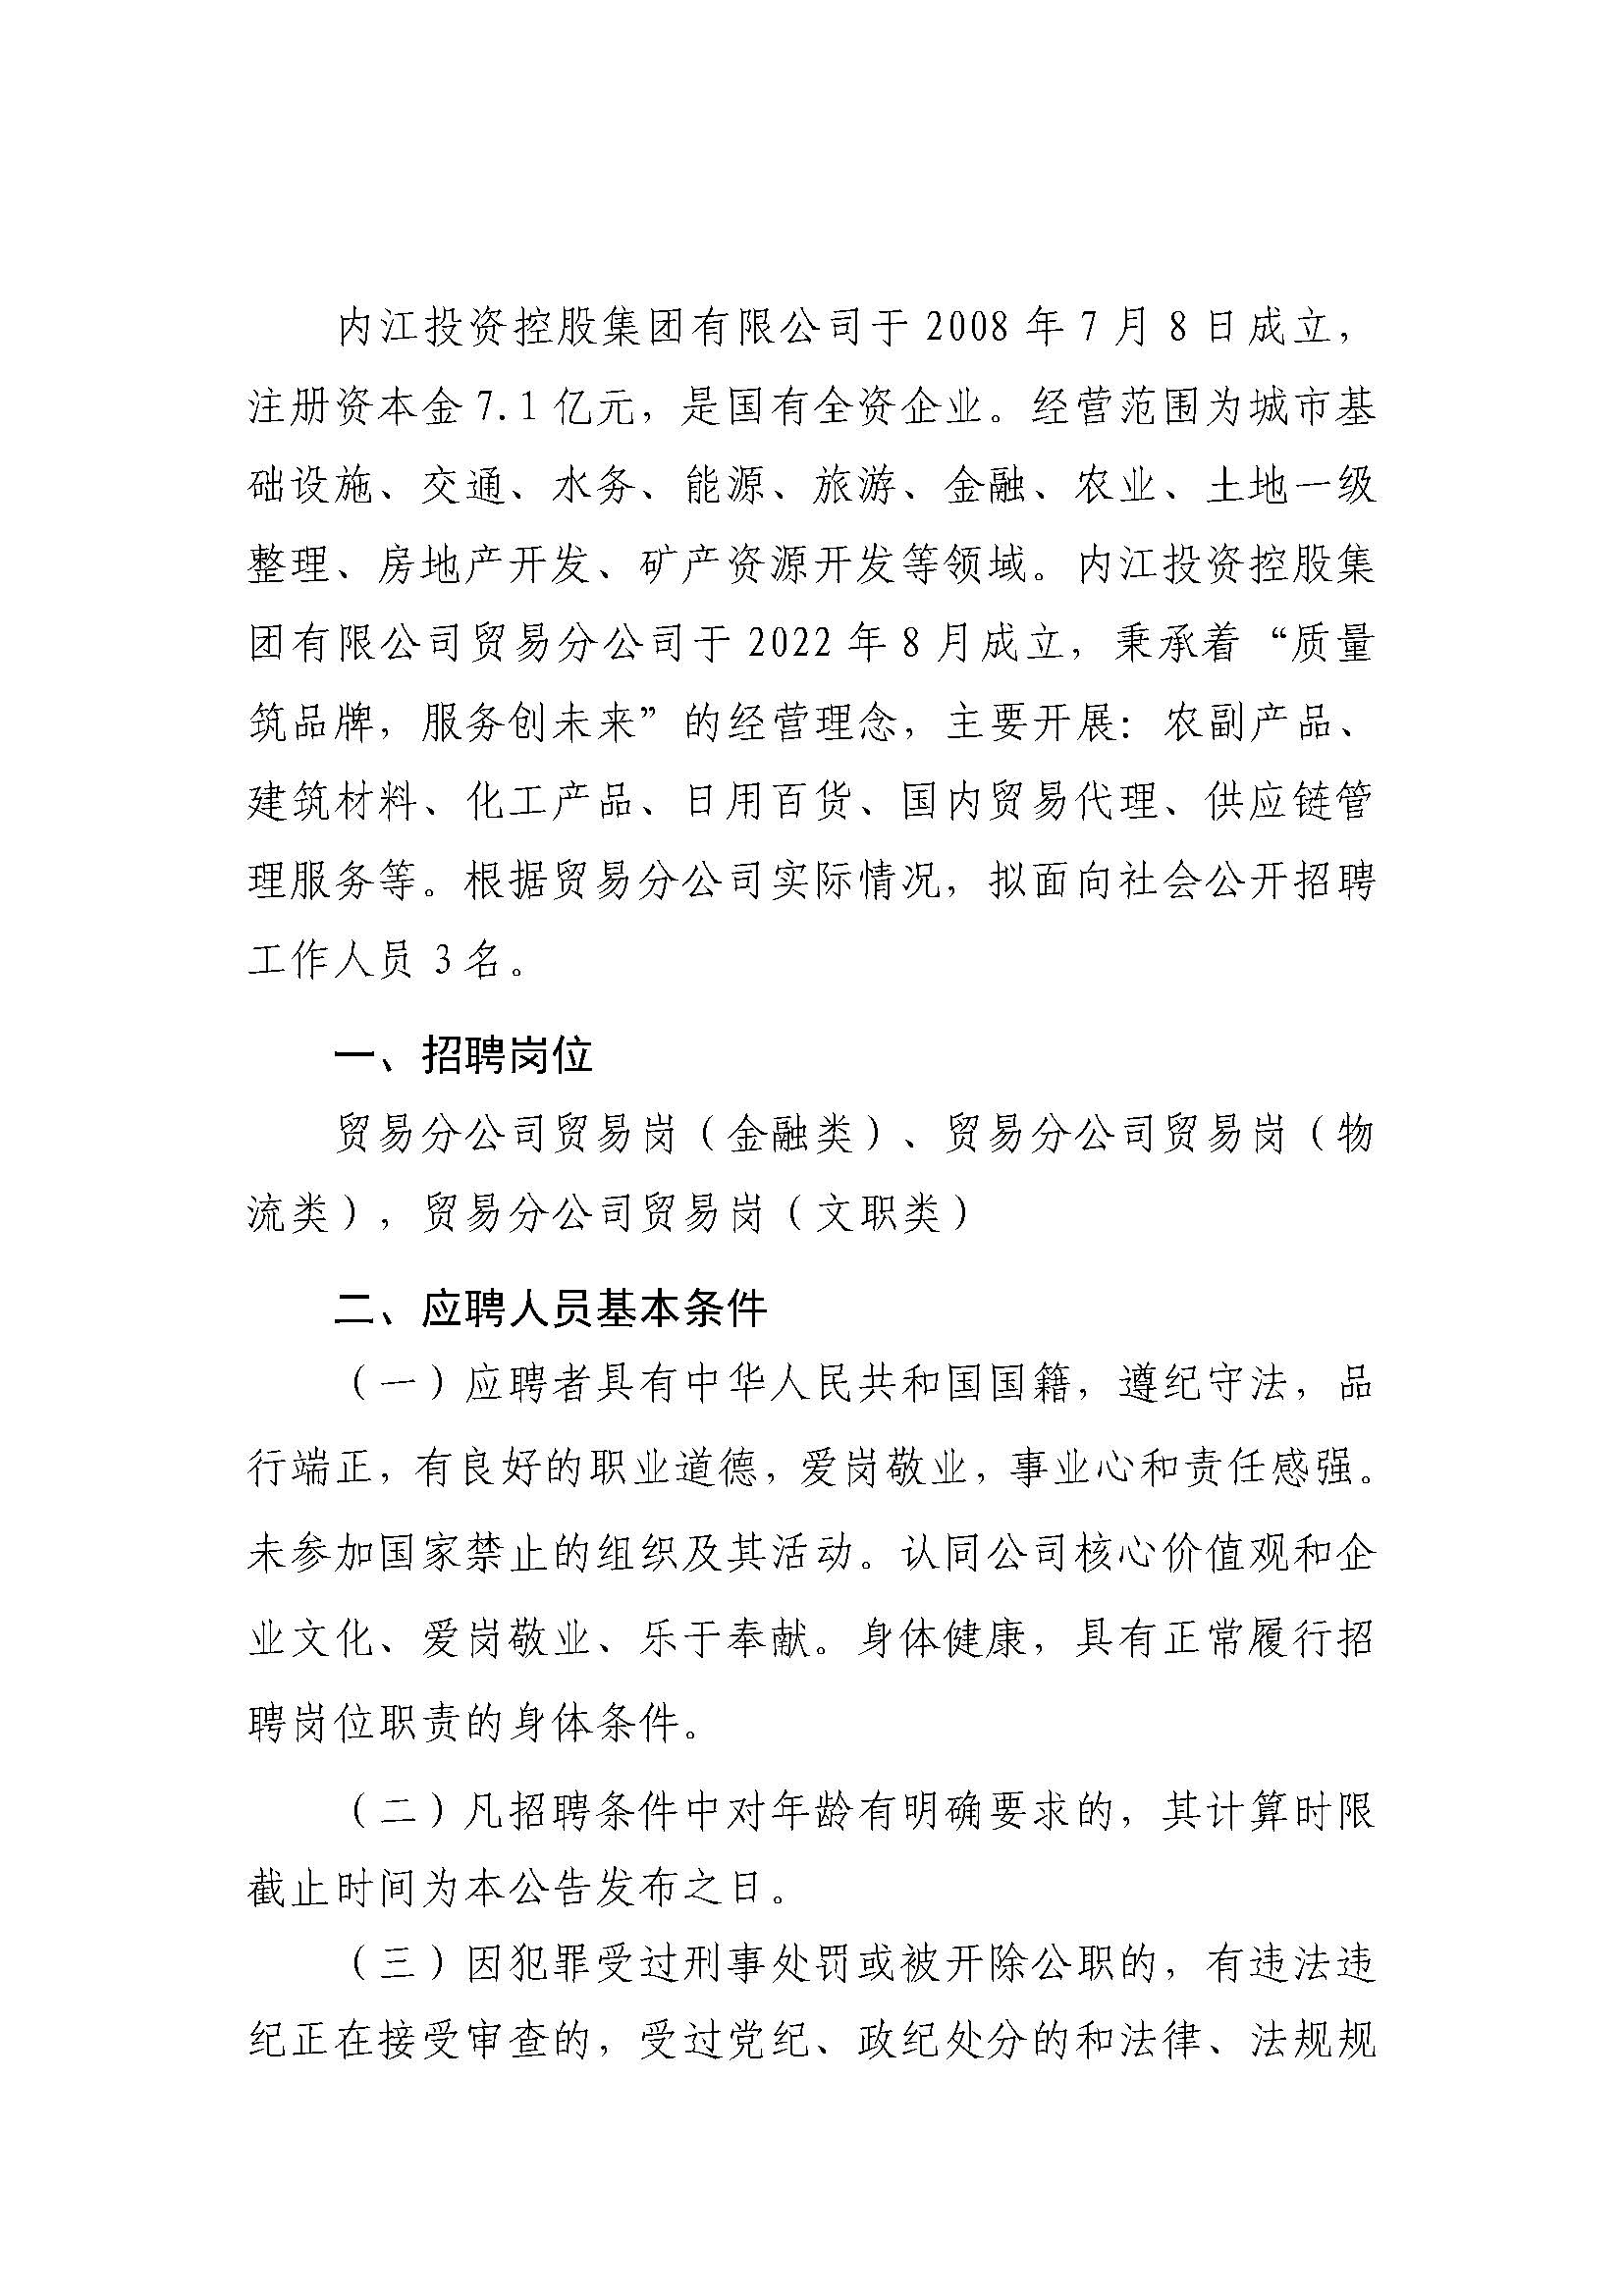 内江投资控股集团有限公司关于2023年社会化招聘的公告